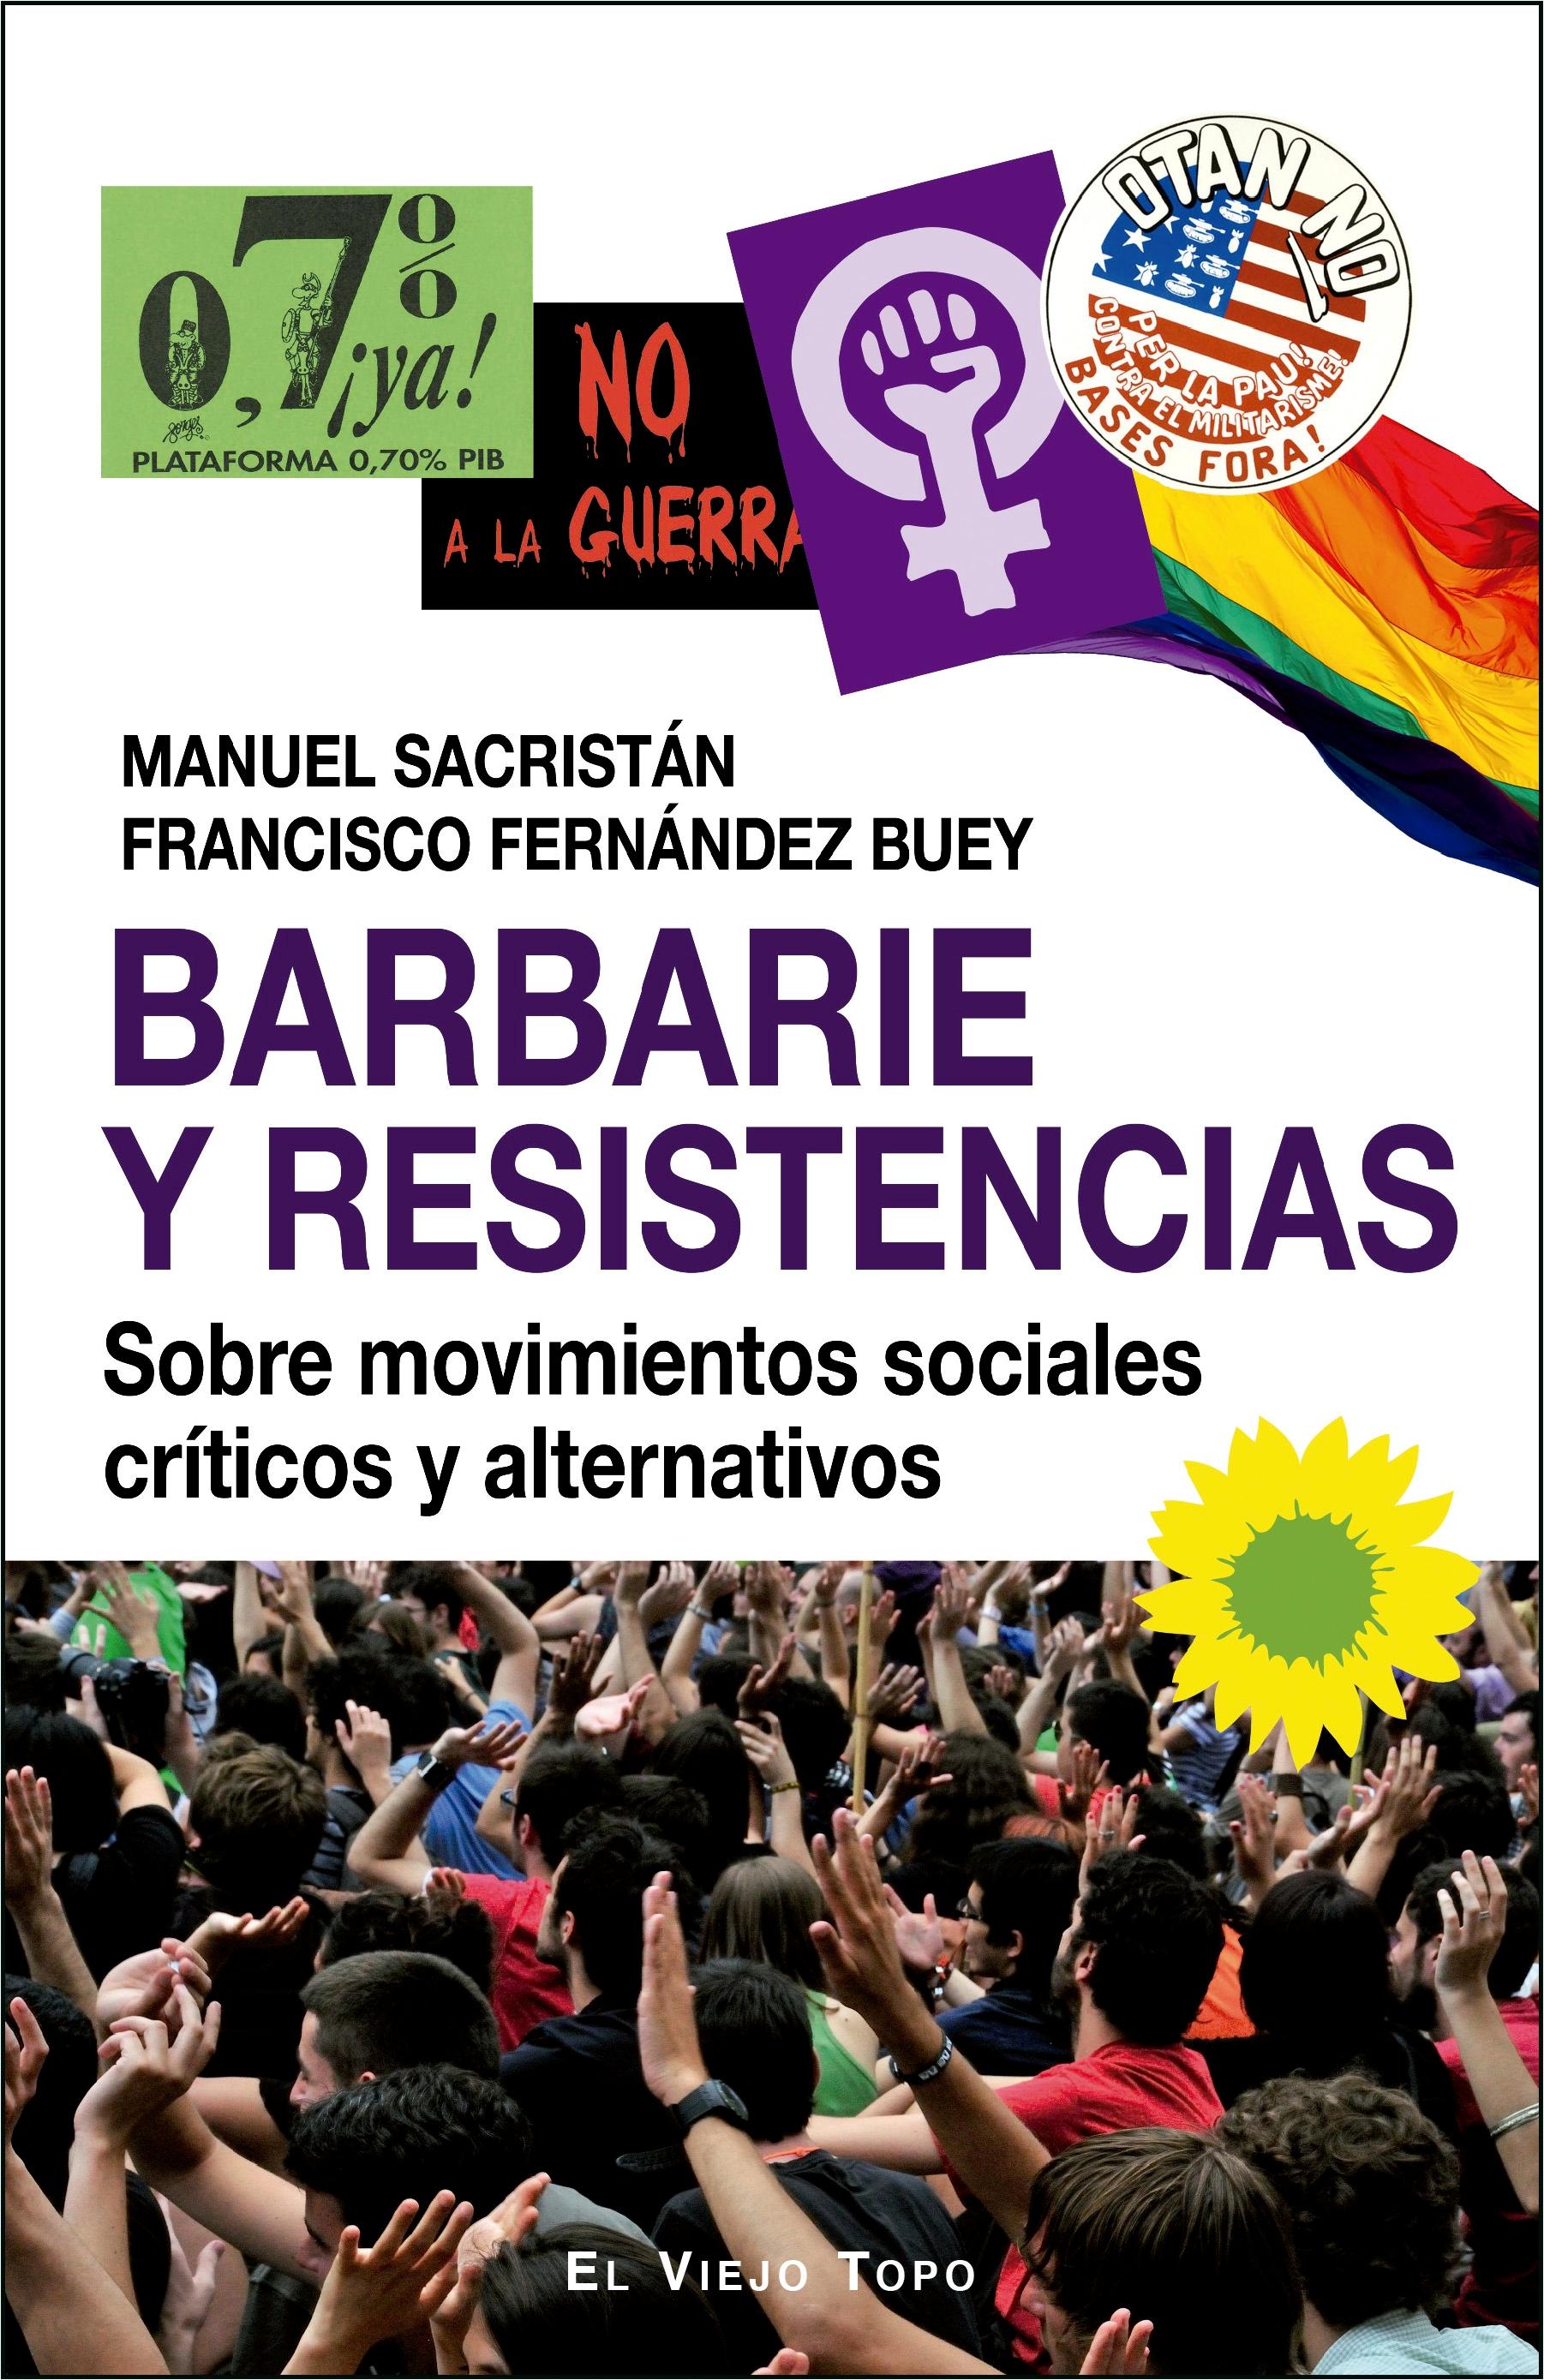 Barbarie y resistencias "Sobre movimienos sociales y alternativos"